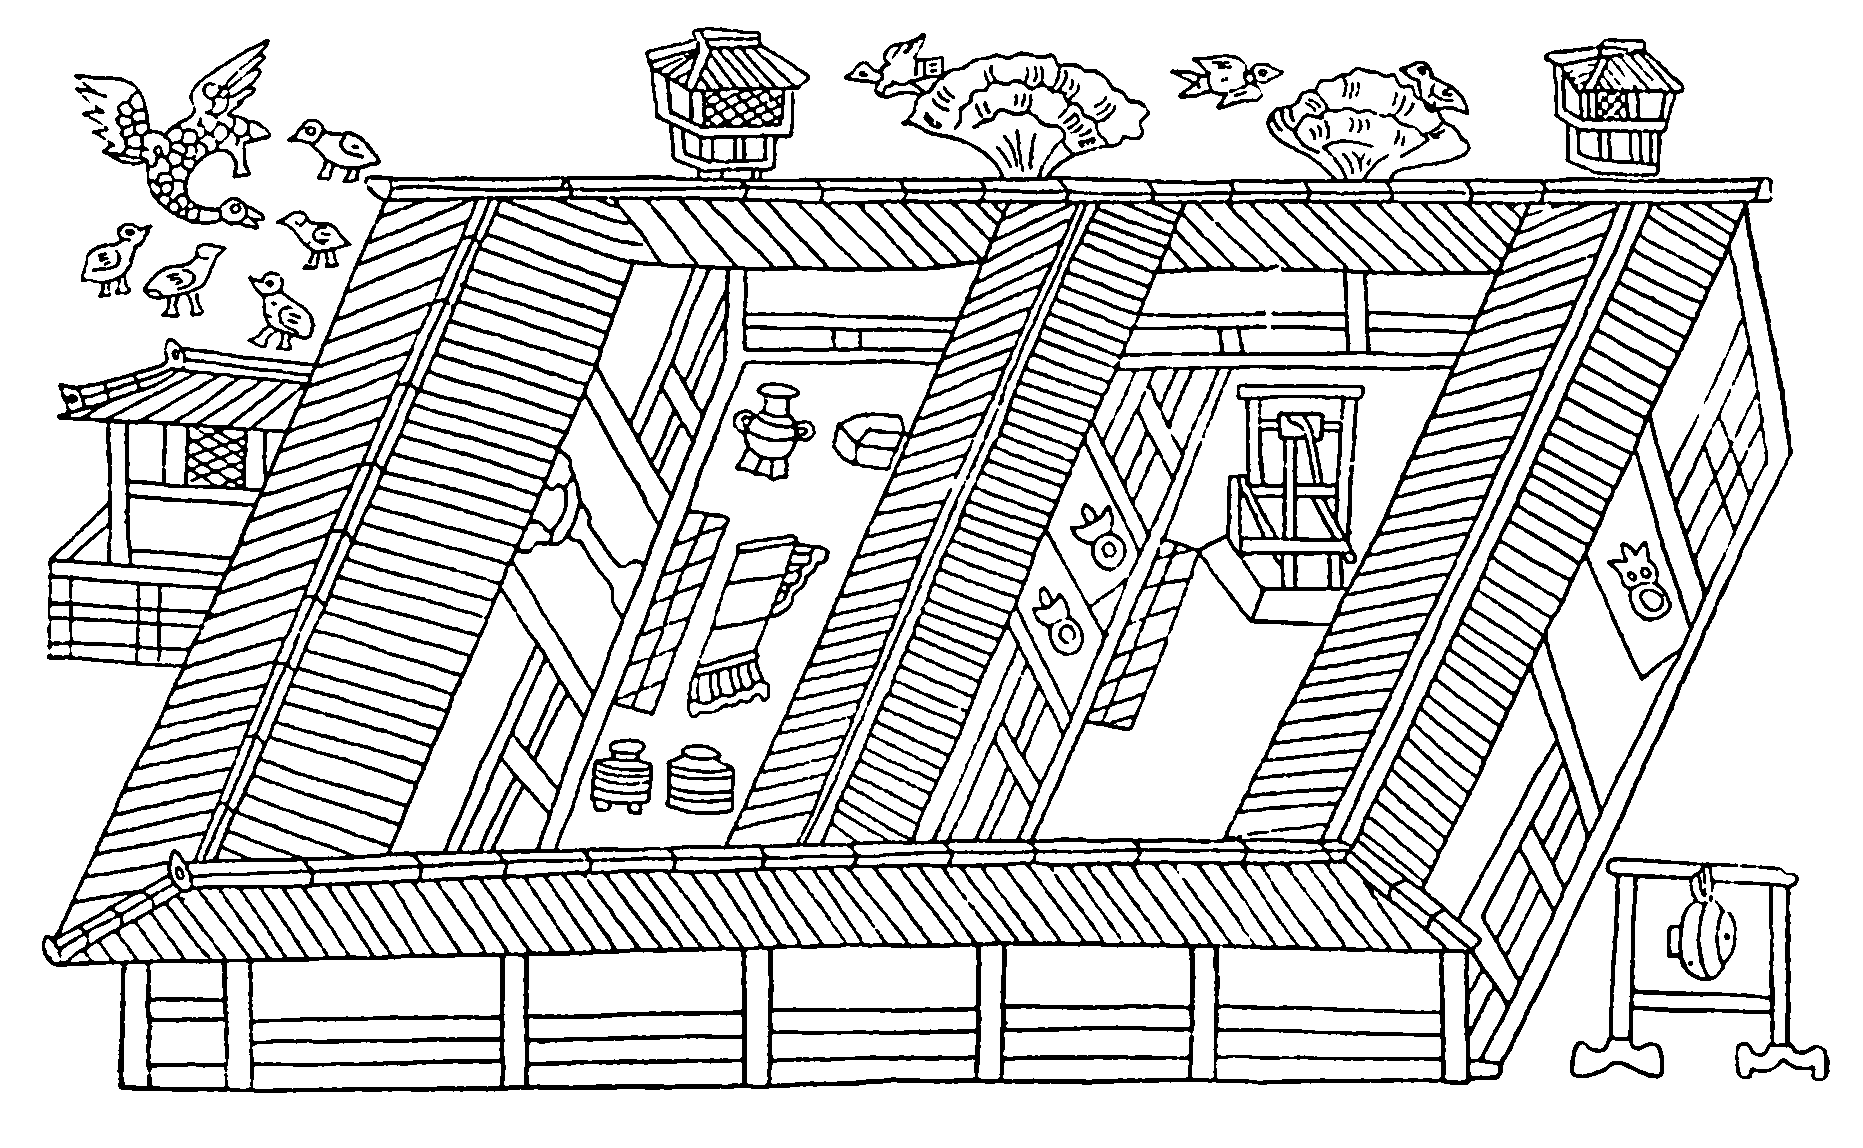 7. Шаньдун, провинция. Изображение жилой постройки типа «сыхэюань» в погребении Инань, II в. н. э.